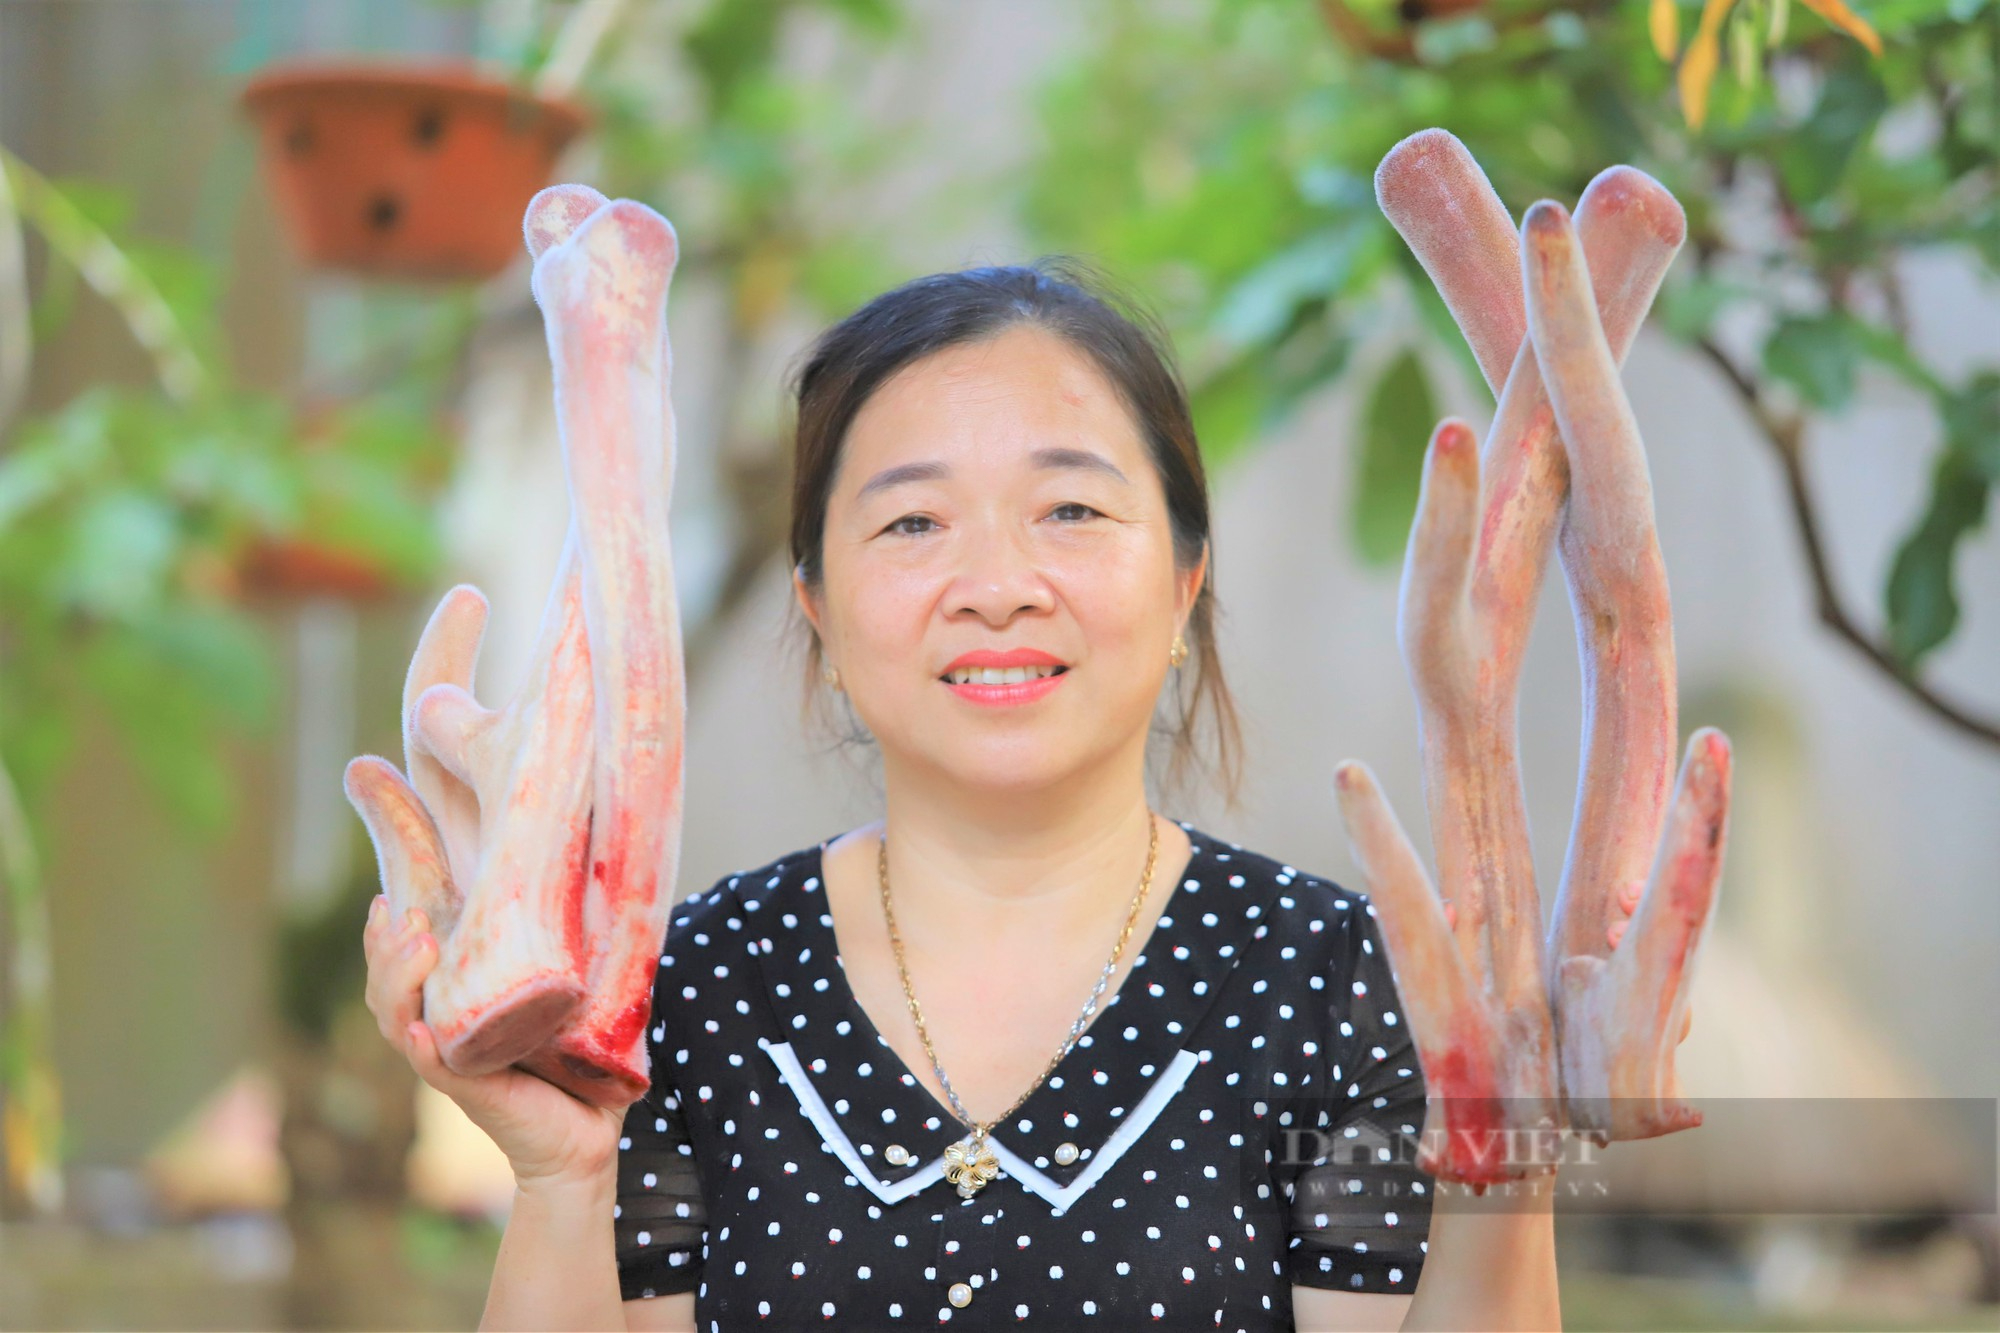 Hà Tĩnh: Trở thành Nông dân Việt Nam xuất sắc 2022 cũng nhờ nuôi loài thú đội thứ “đại bổ” trên đầu - Ảnh 2.